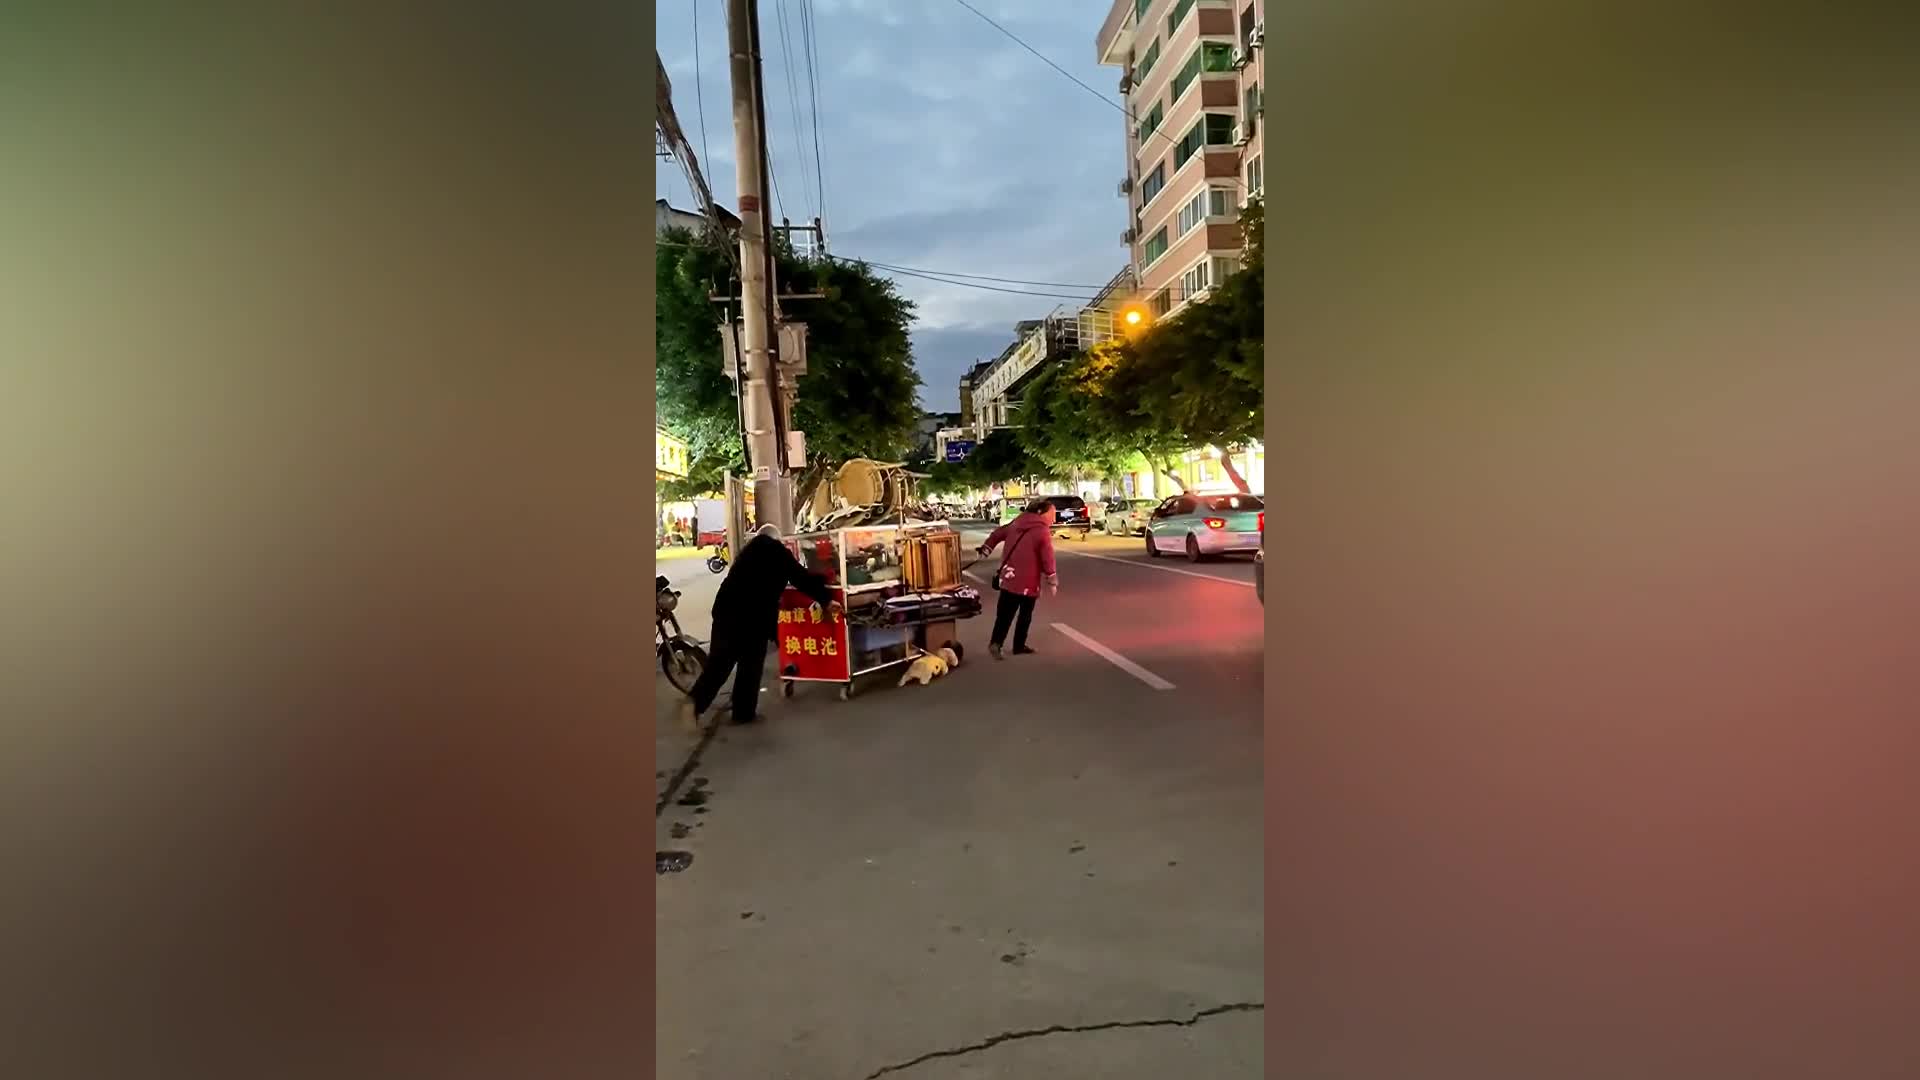 Giải trí - Clip: Chú chó dẫn đôi vợ chồng già qua đường 